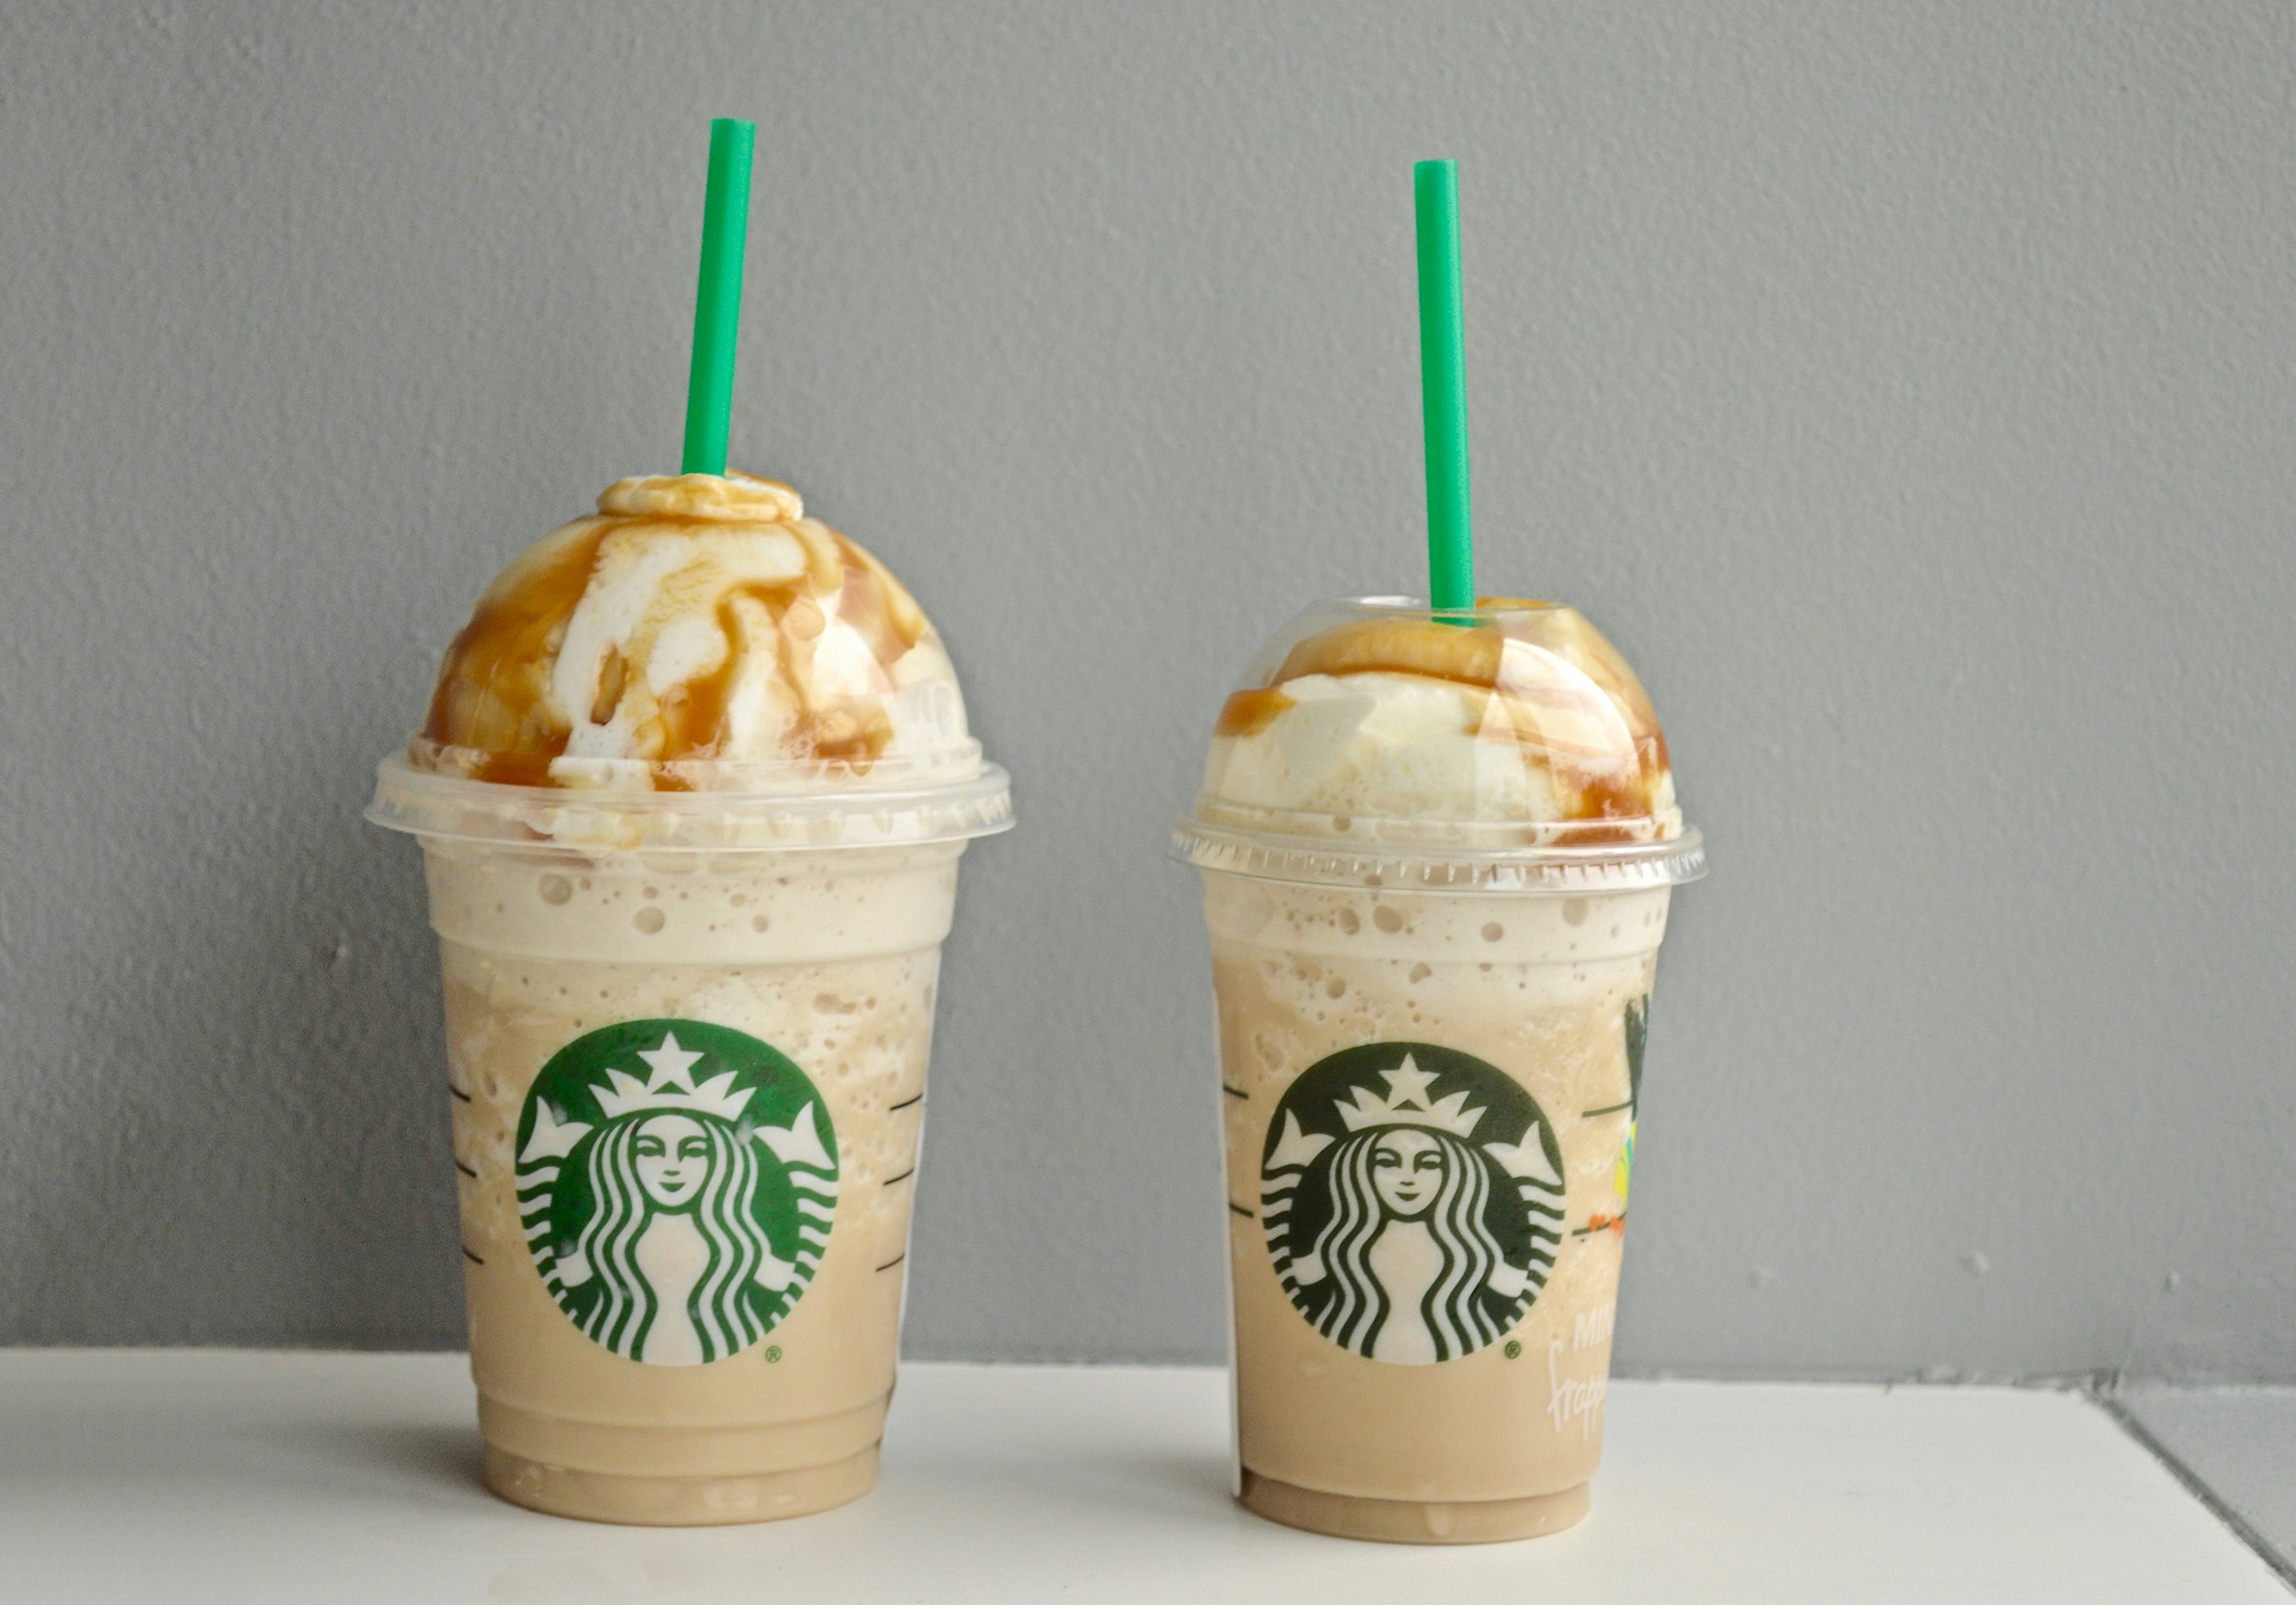 New Starbucks Frappuccino Size, The Mini Frappuccino!